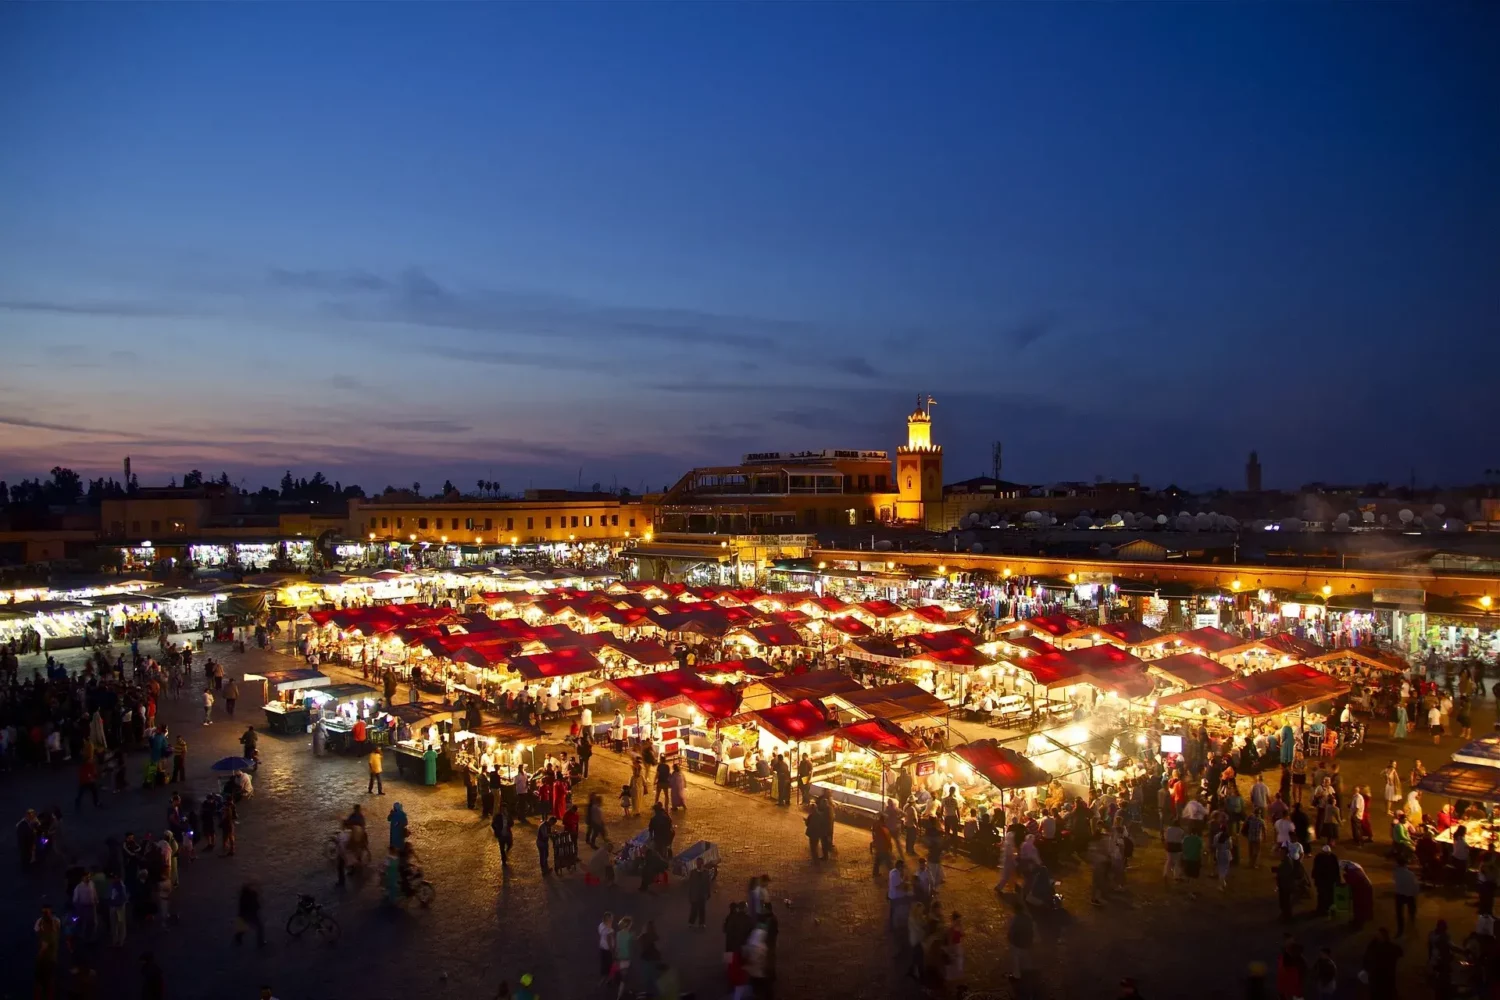 Place Jemaa el-Fna de nuit à Marrakech, vue générale avec foule, lumières et étals de nourriture.